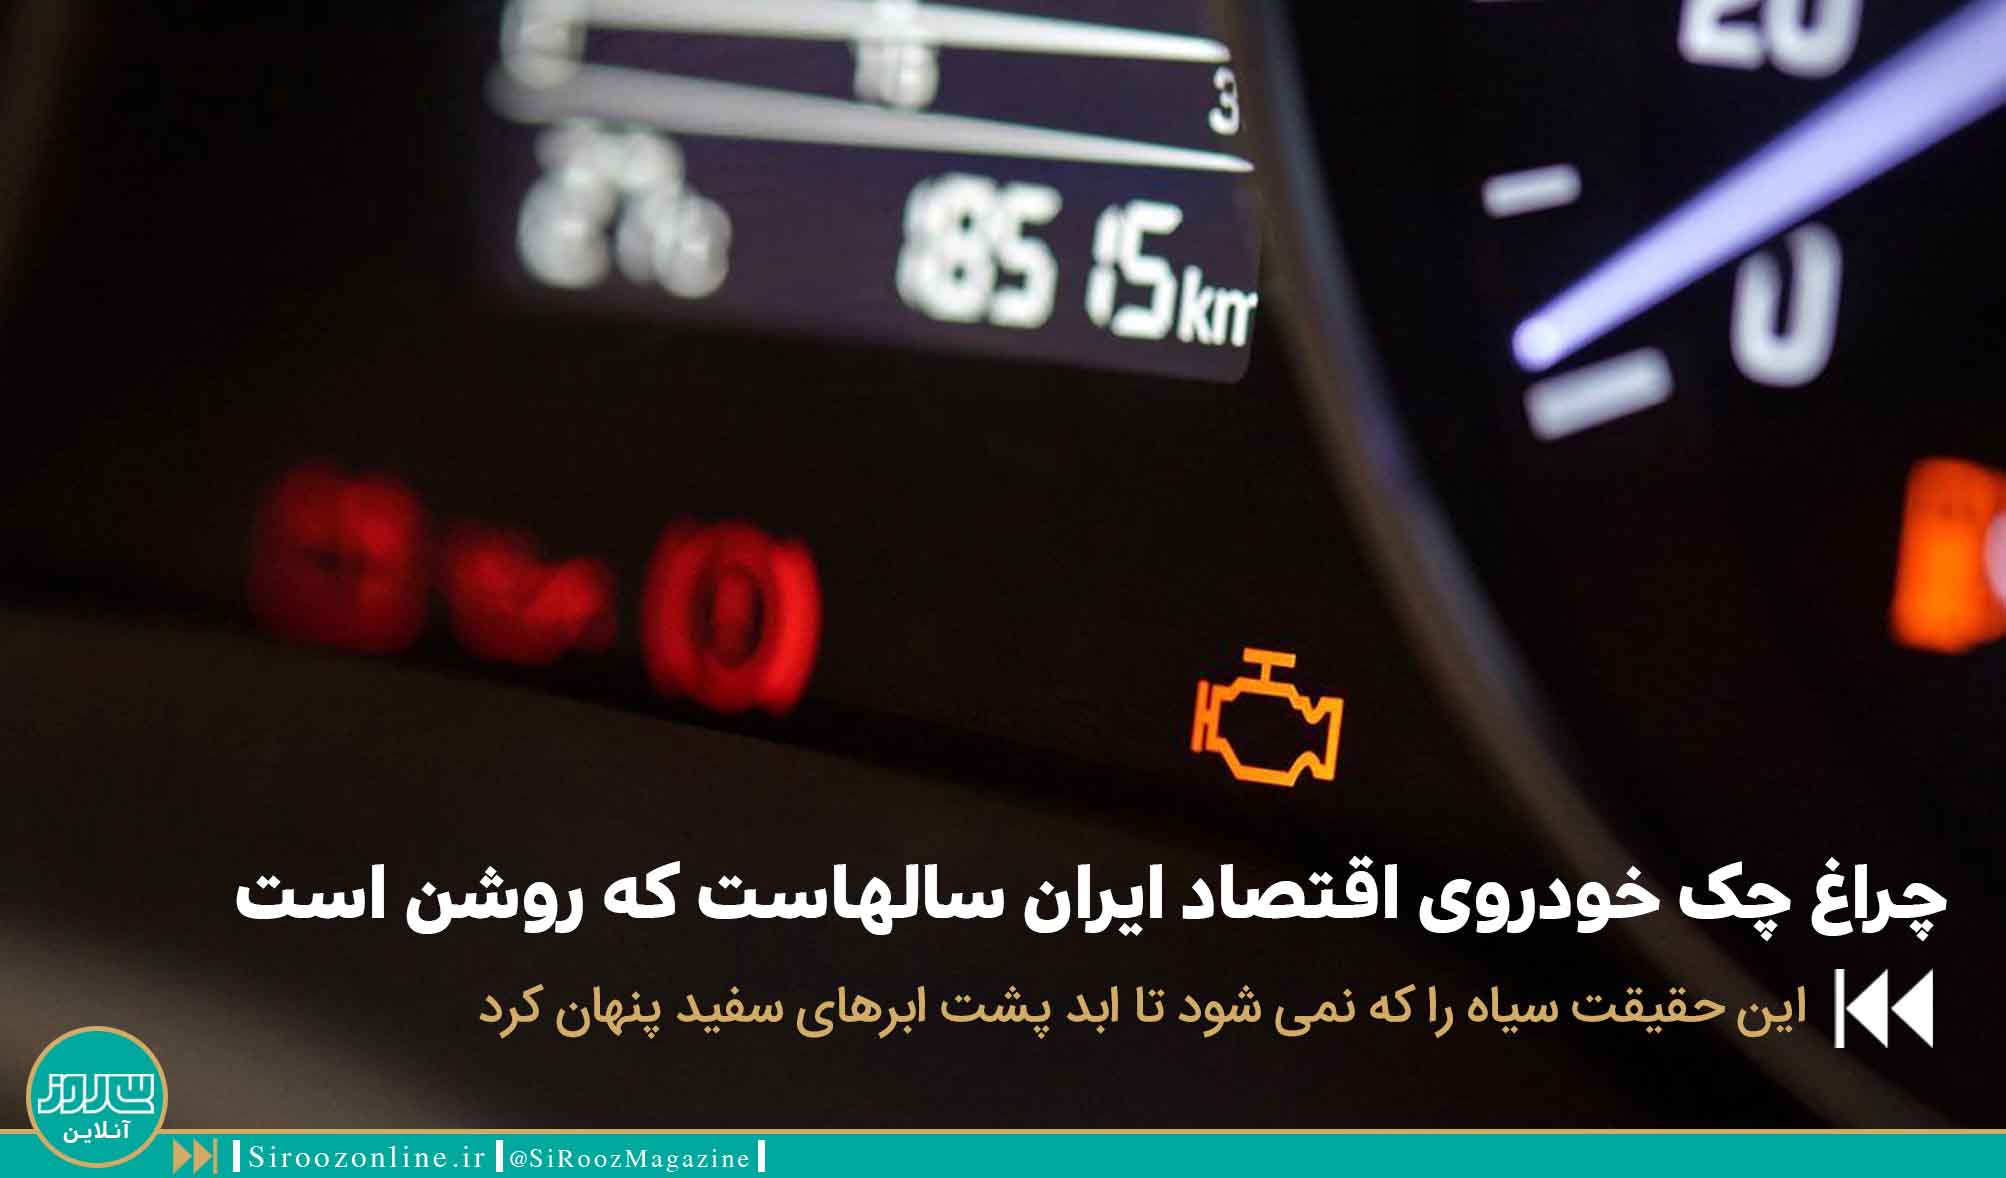 چراغ چک خودروی اقتصاد ایران سالهاست که روشن است 